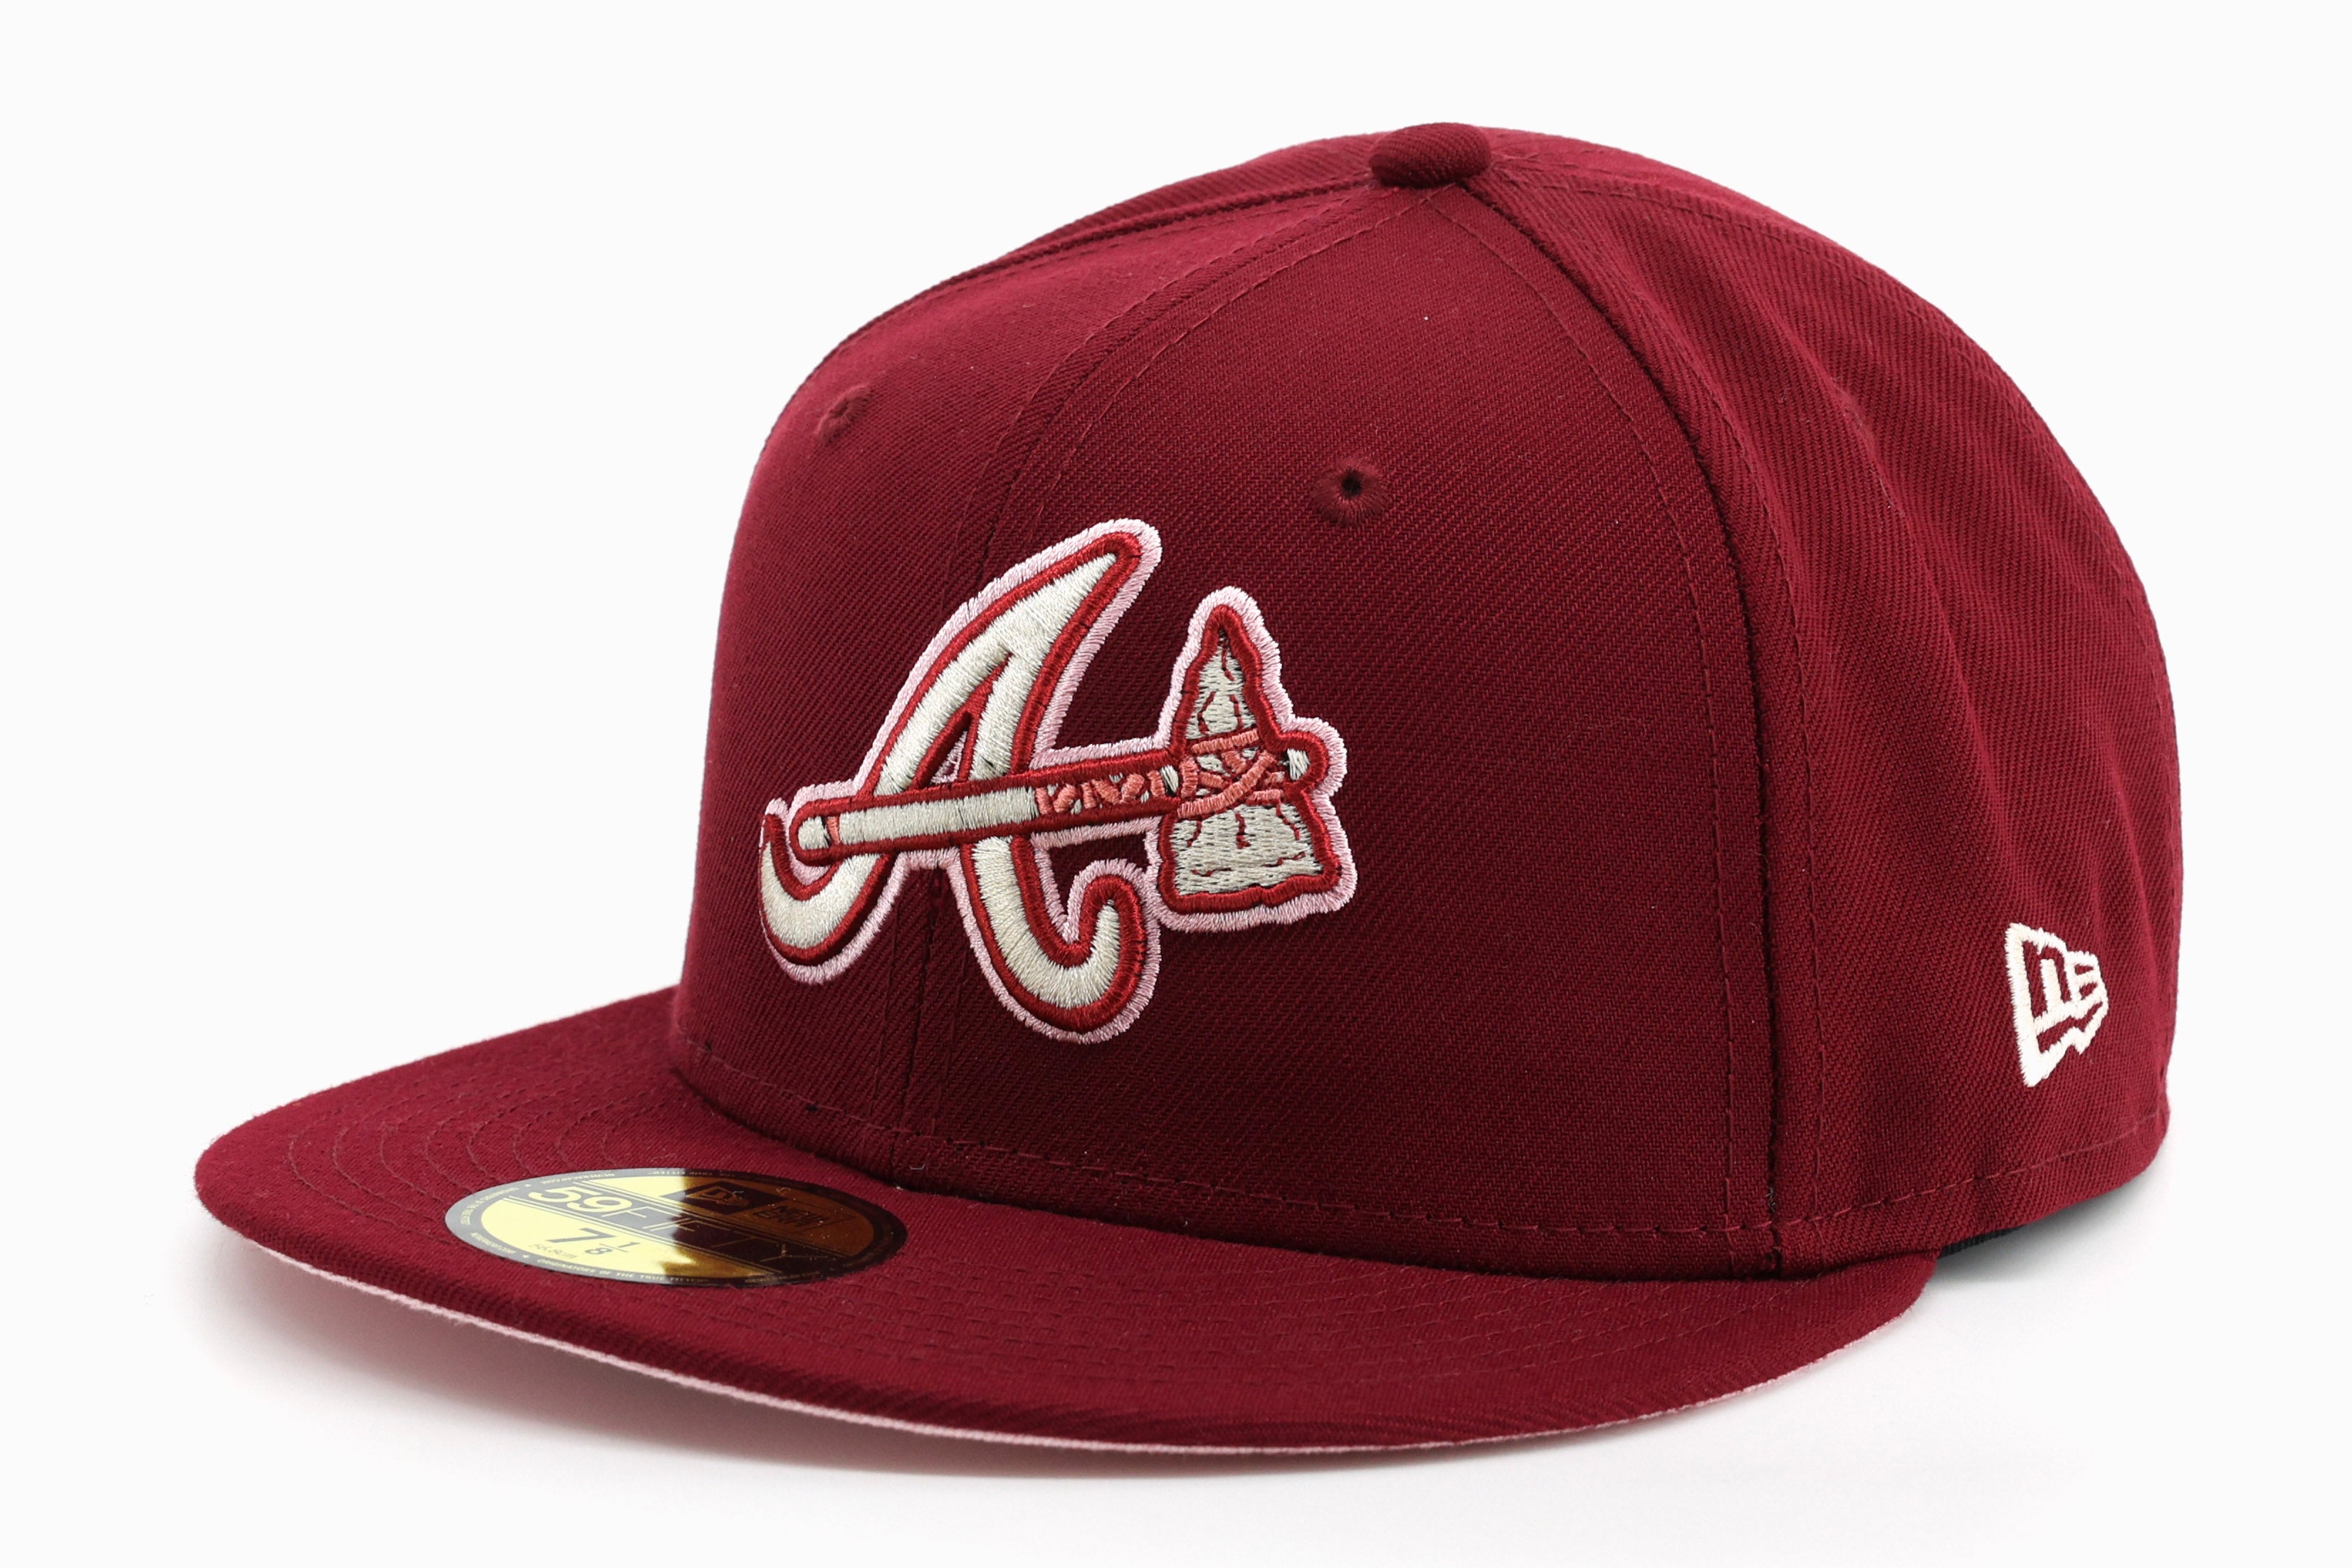 New Era 59 / 50 Hat - Atlanta Braves - Burgundy 8 1/4 / Burgundy